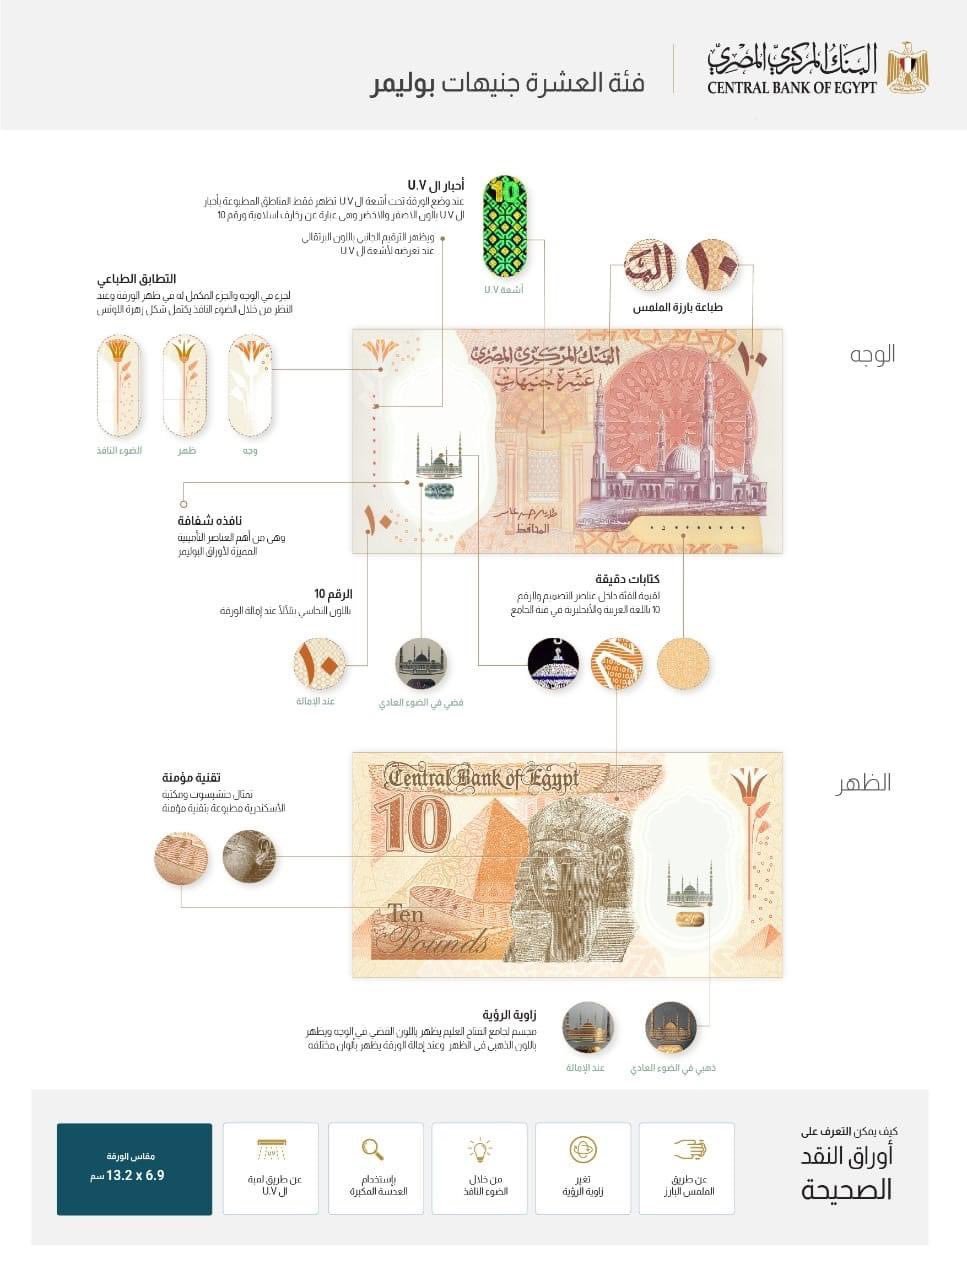 مصر تدخل قائمة الدول التي تحولت لاستخدام العملات المصنوعة من مادة البوليمر 29058010